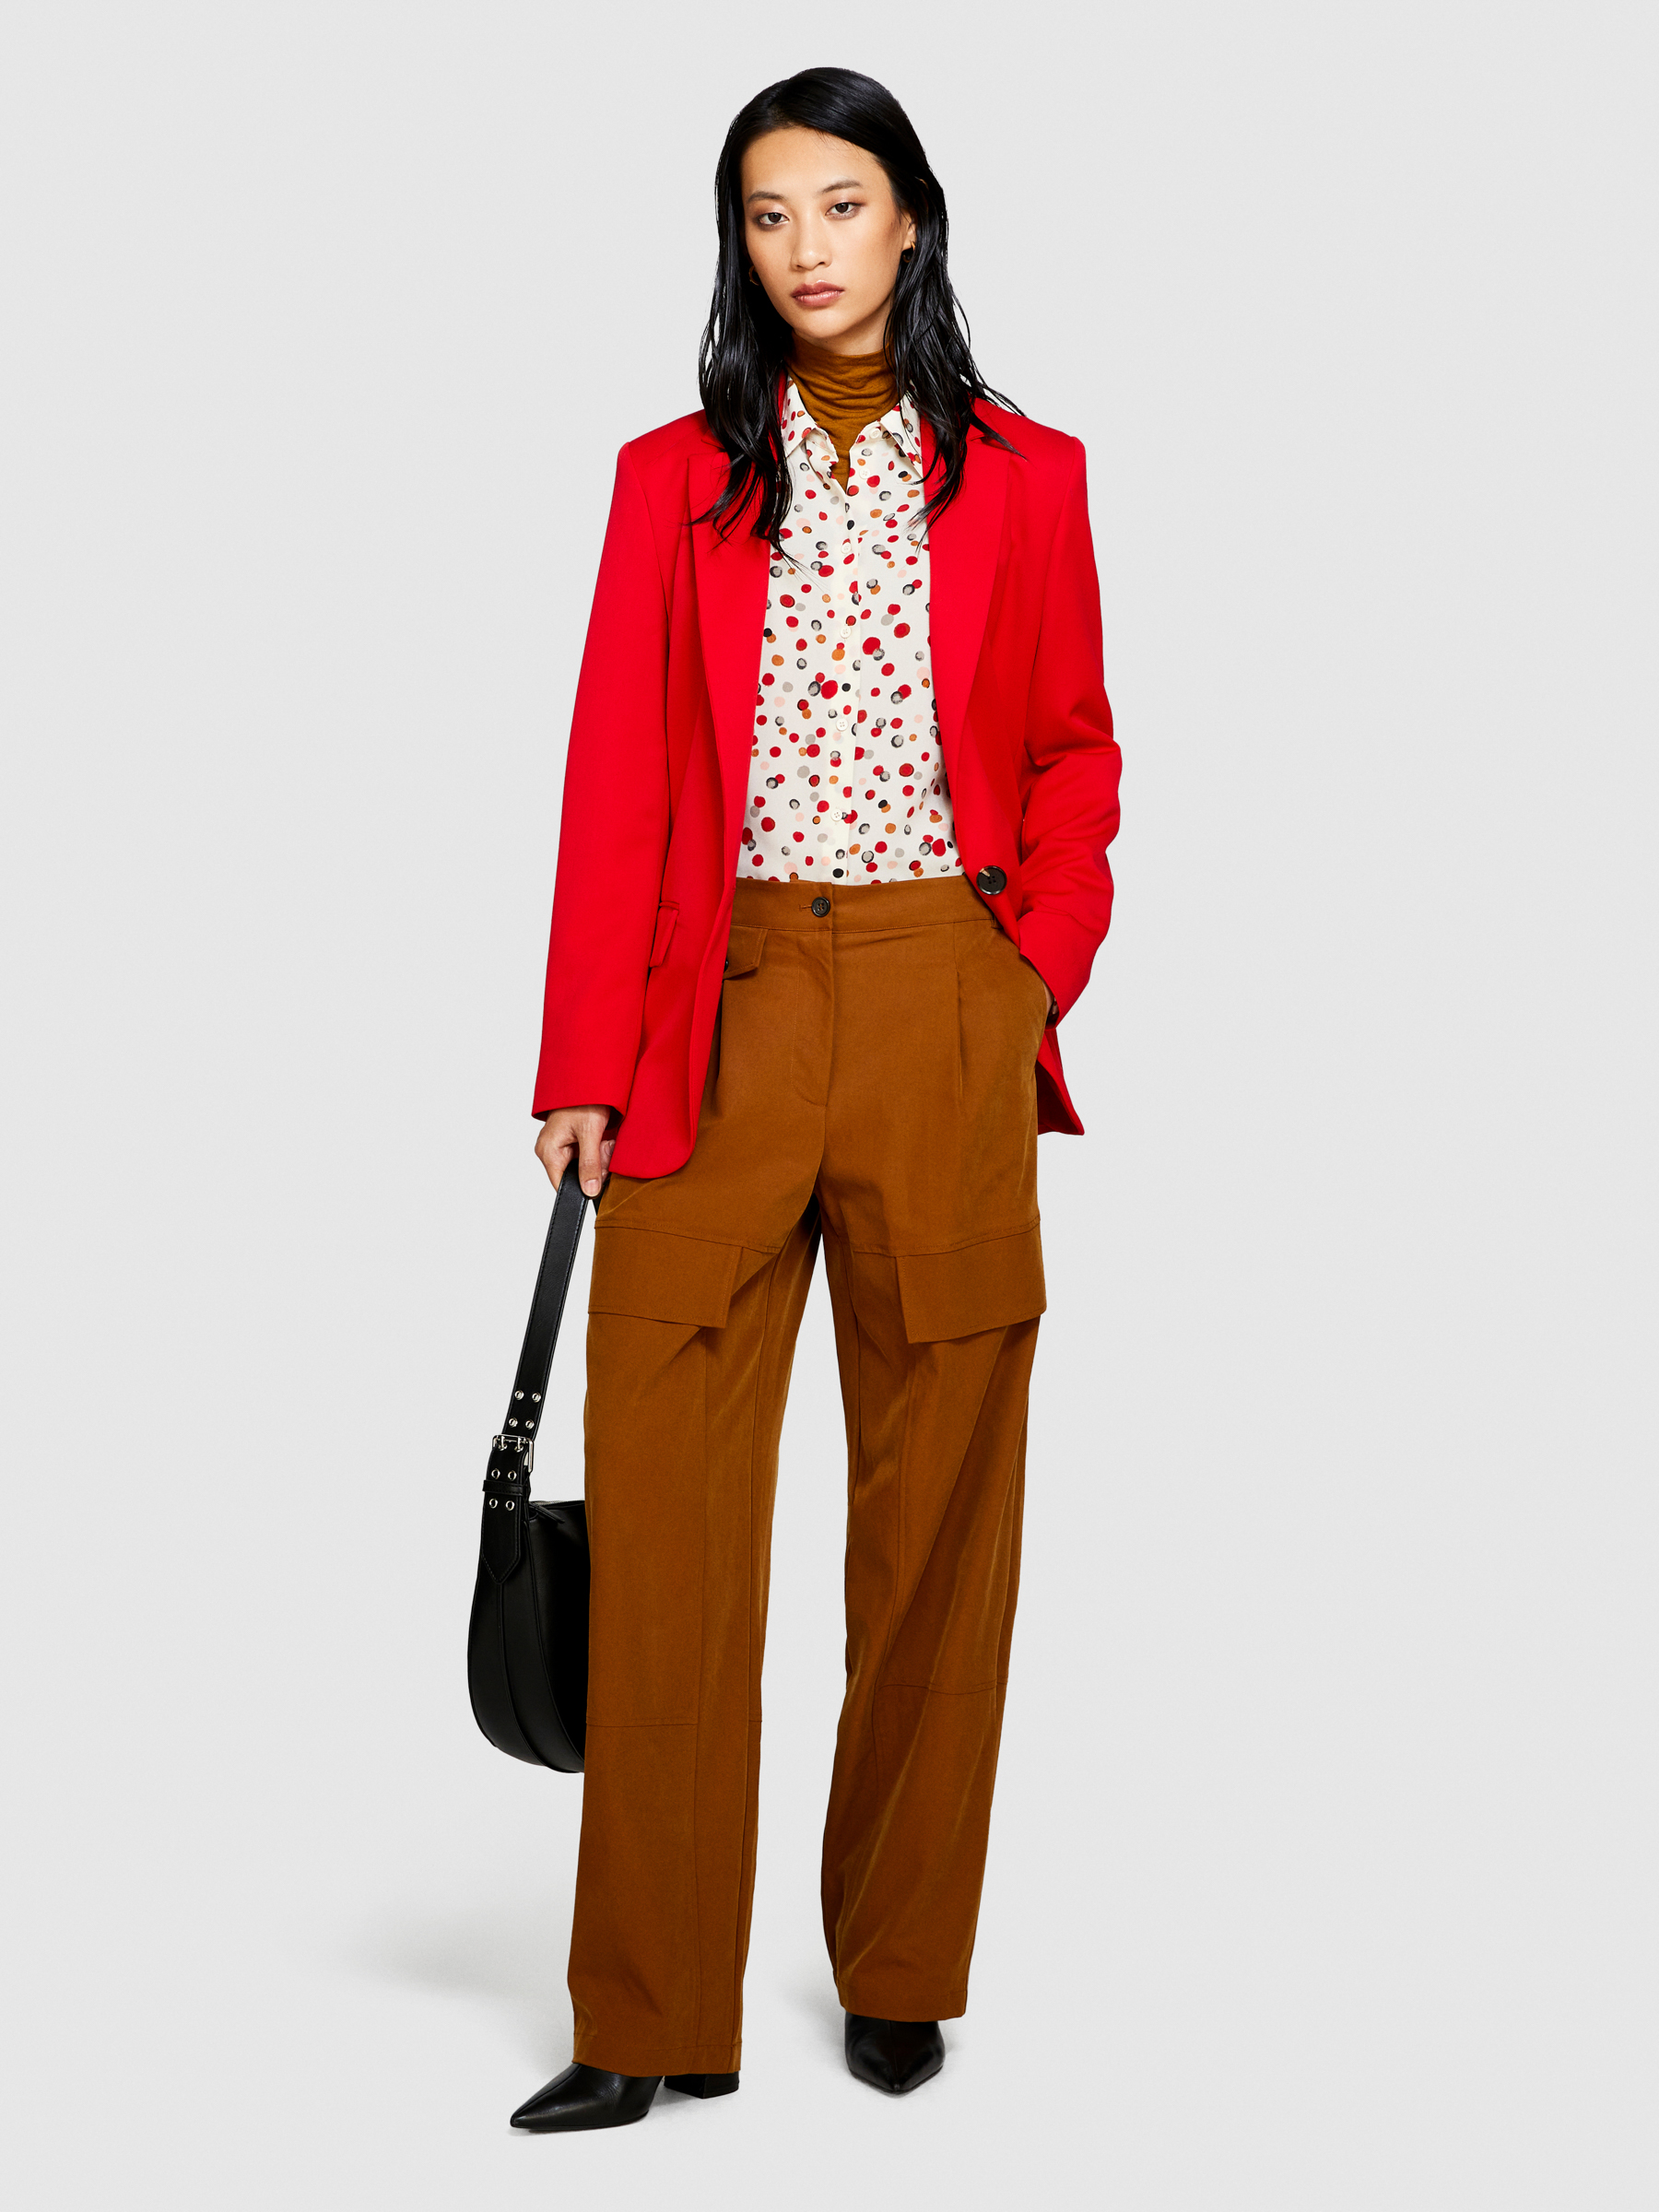 Sisley - Printed Shirt, Woman, Multi-color, Size: S